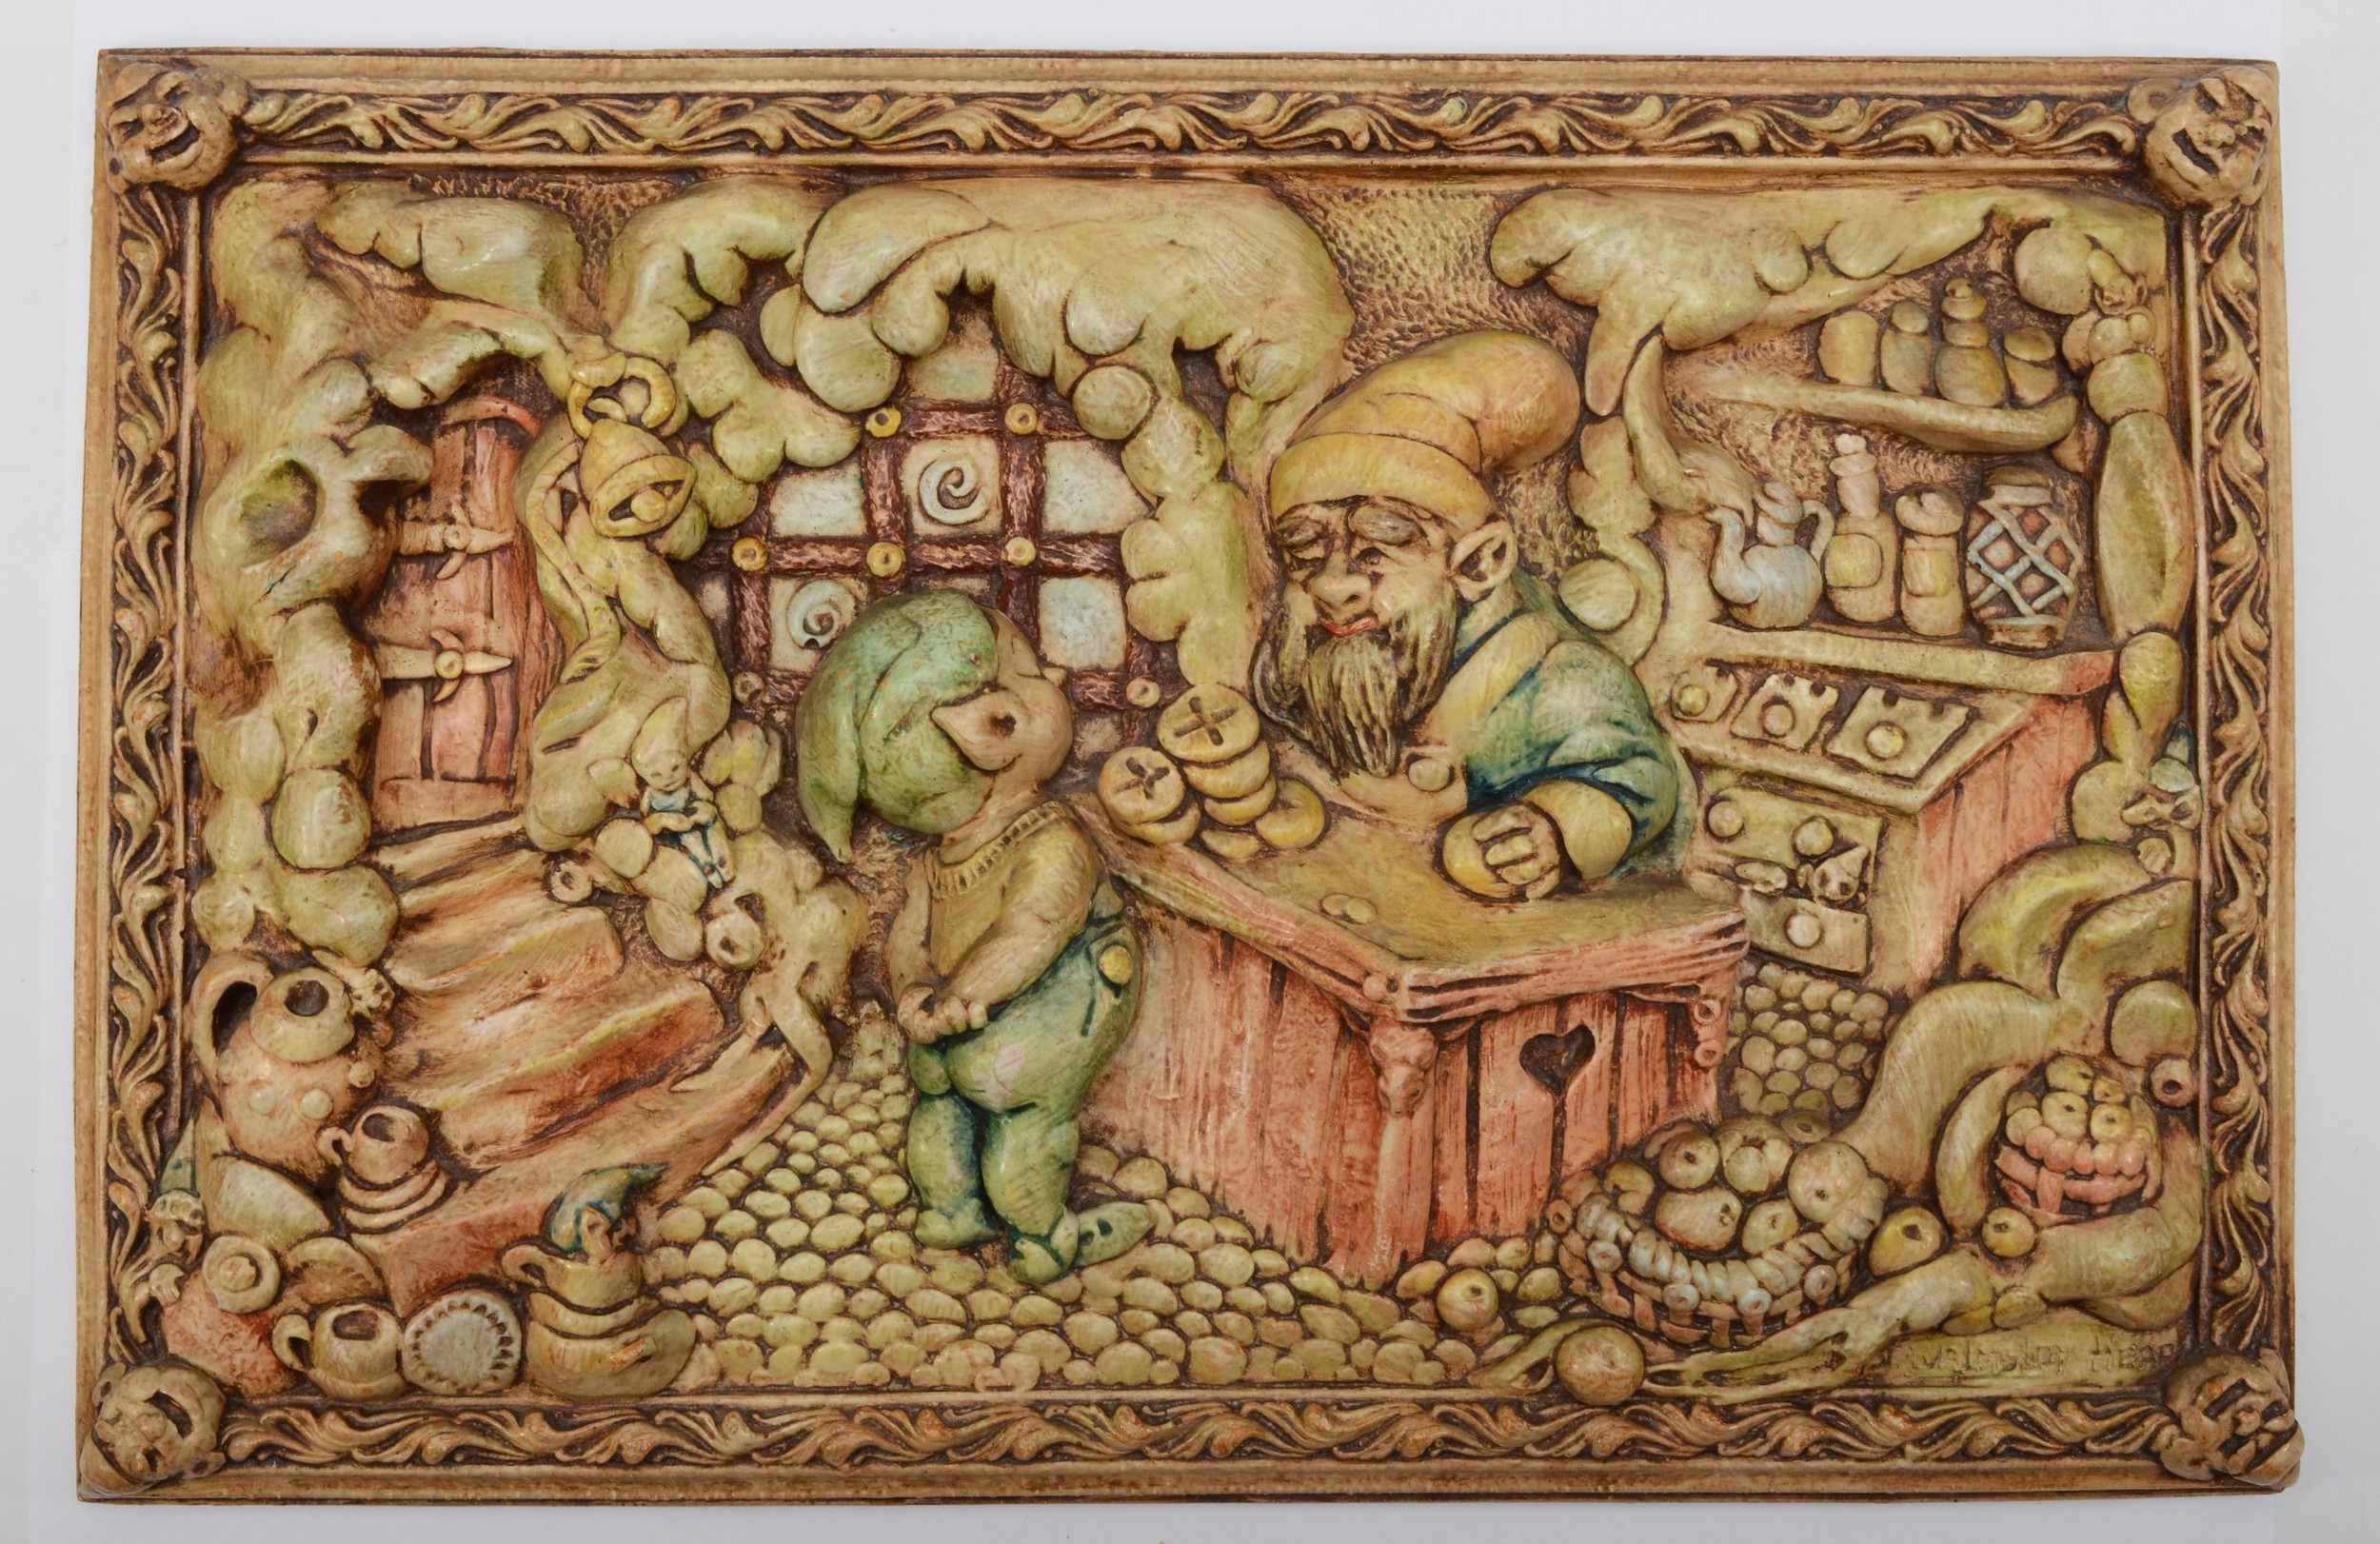 Pendelfin; a 'Fairy Shop' plaque designed by J. Walmsley Heap, 27x40cm